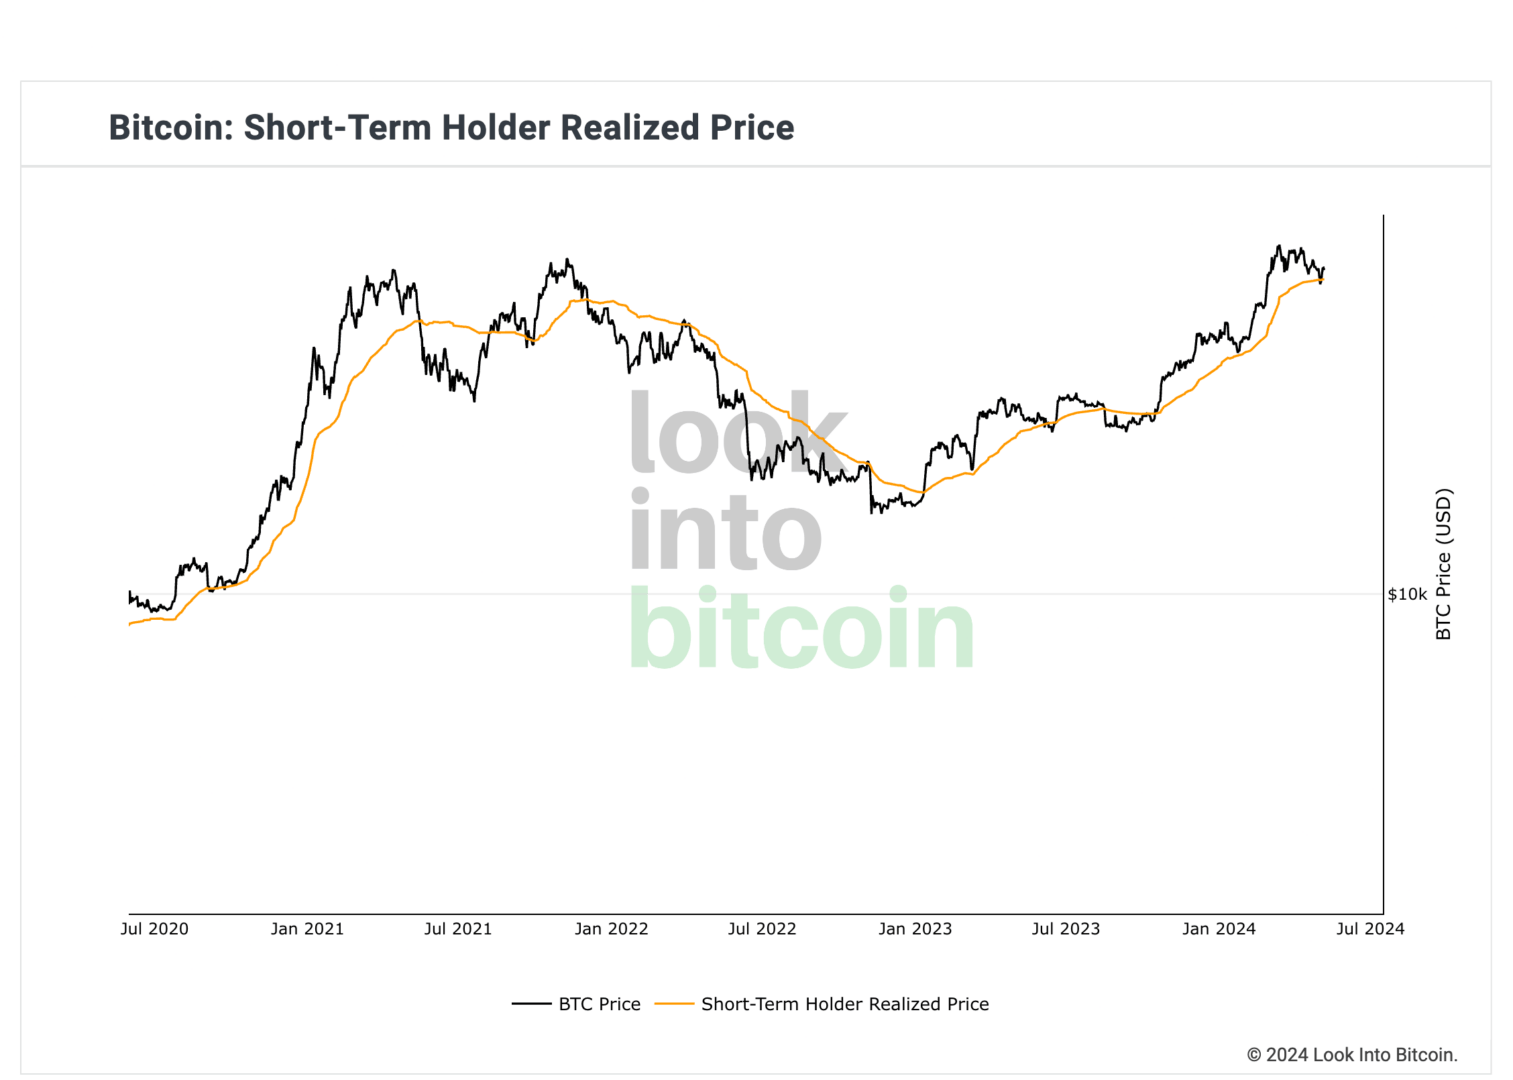 Le cours continue d'évoluer au-delà du prix réalisé des détenteurs à court terme, la tendance est toujours haussière sur le Bitcoin. 